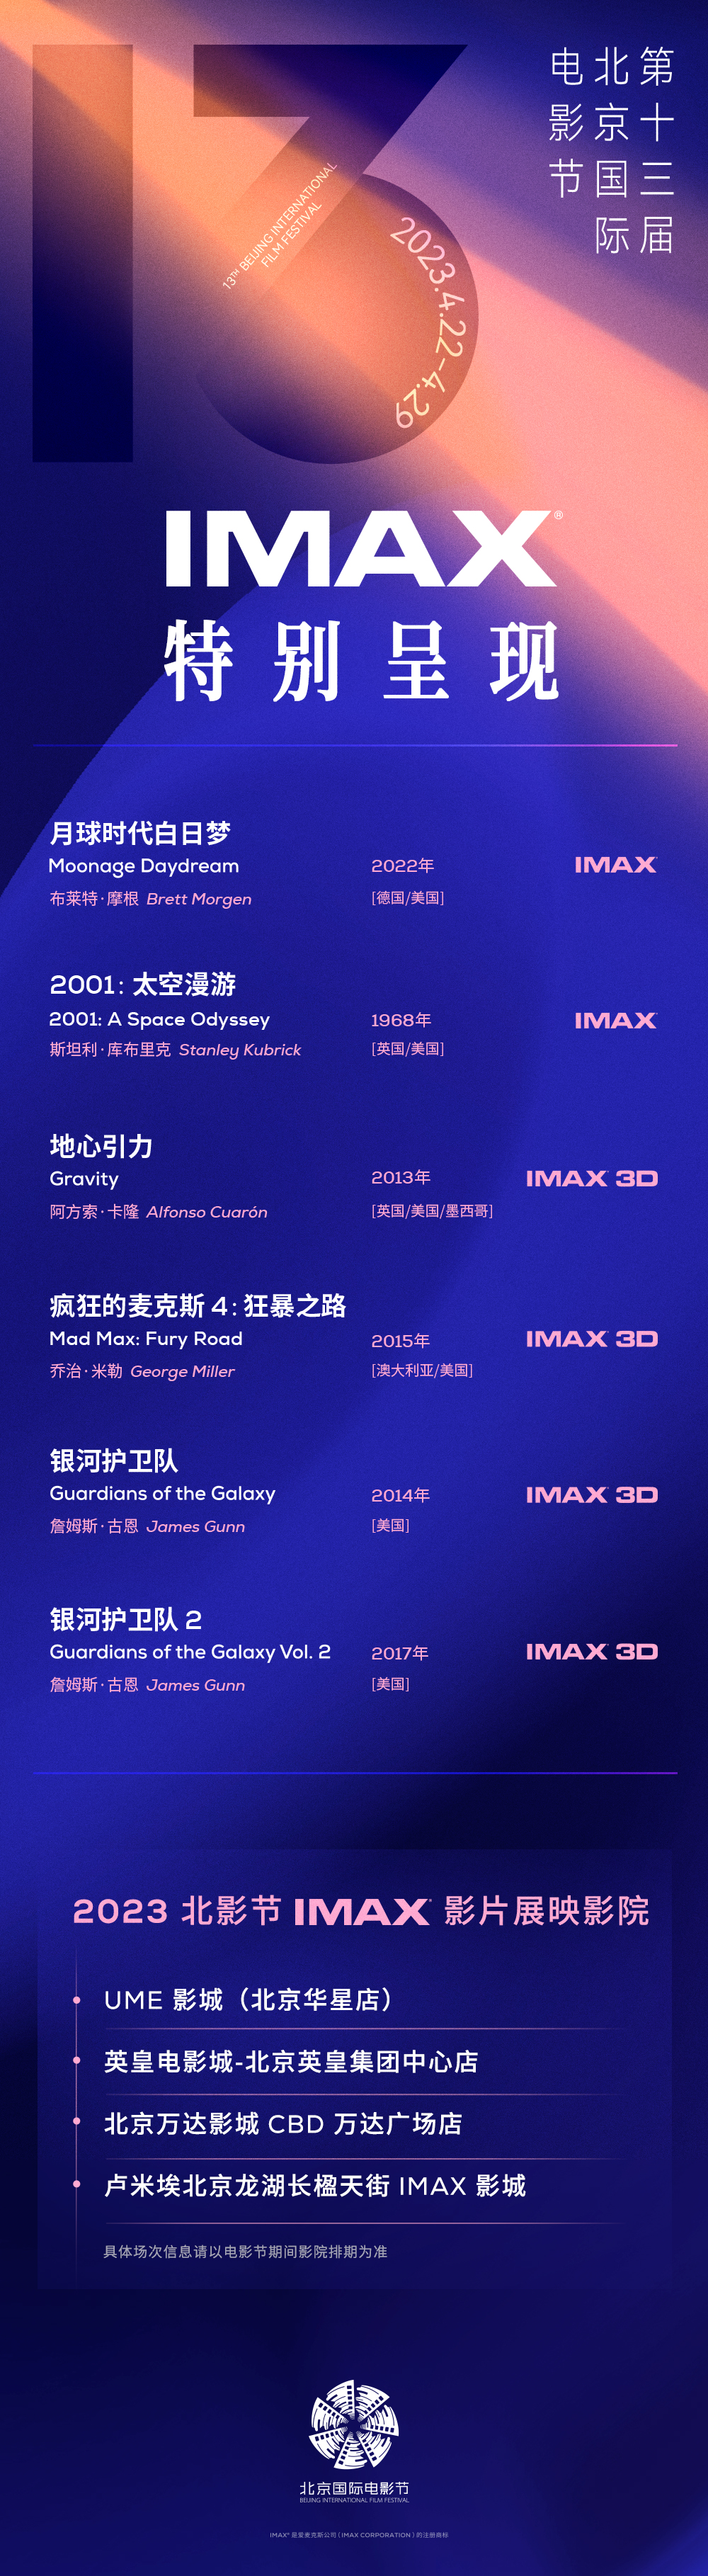 第十三届北京国际电影节IMAX片单公布 六部IMAX经典之作尽显光影魅力